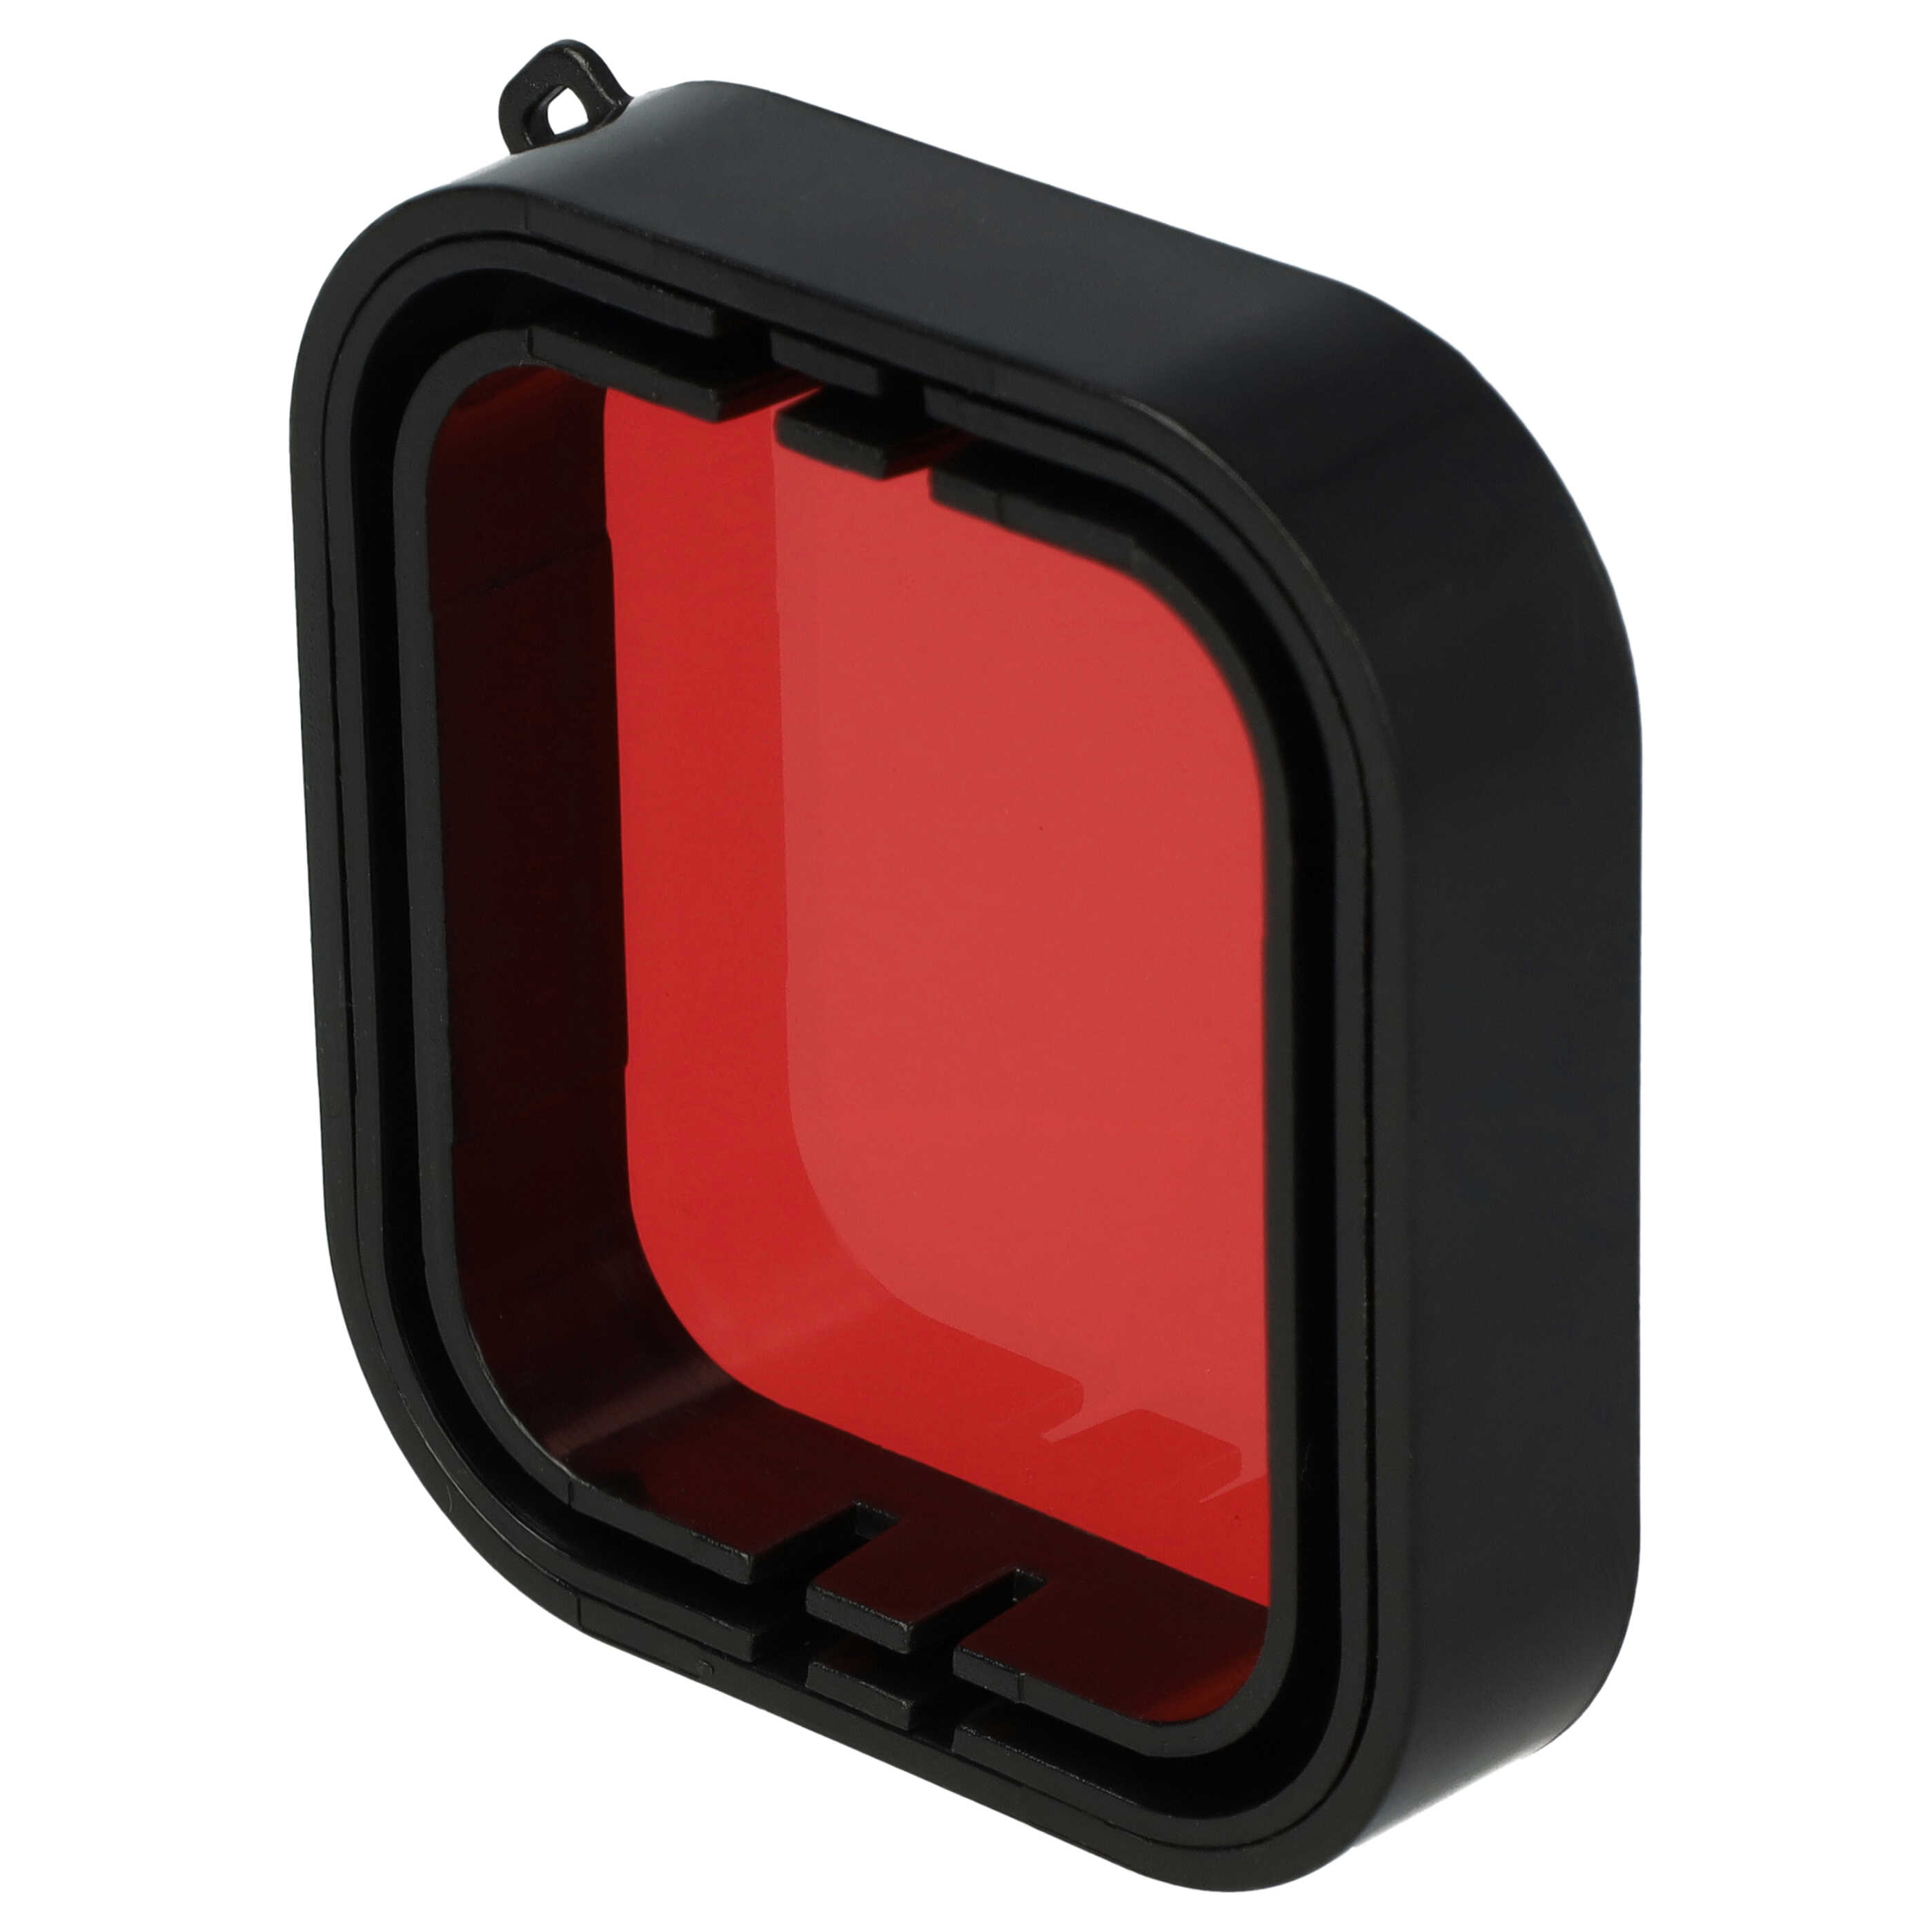 Filtre sous-marin pour caméra d'action GoPro Hero 5, 6 - rouge, pour boîtiers sous-marins